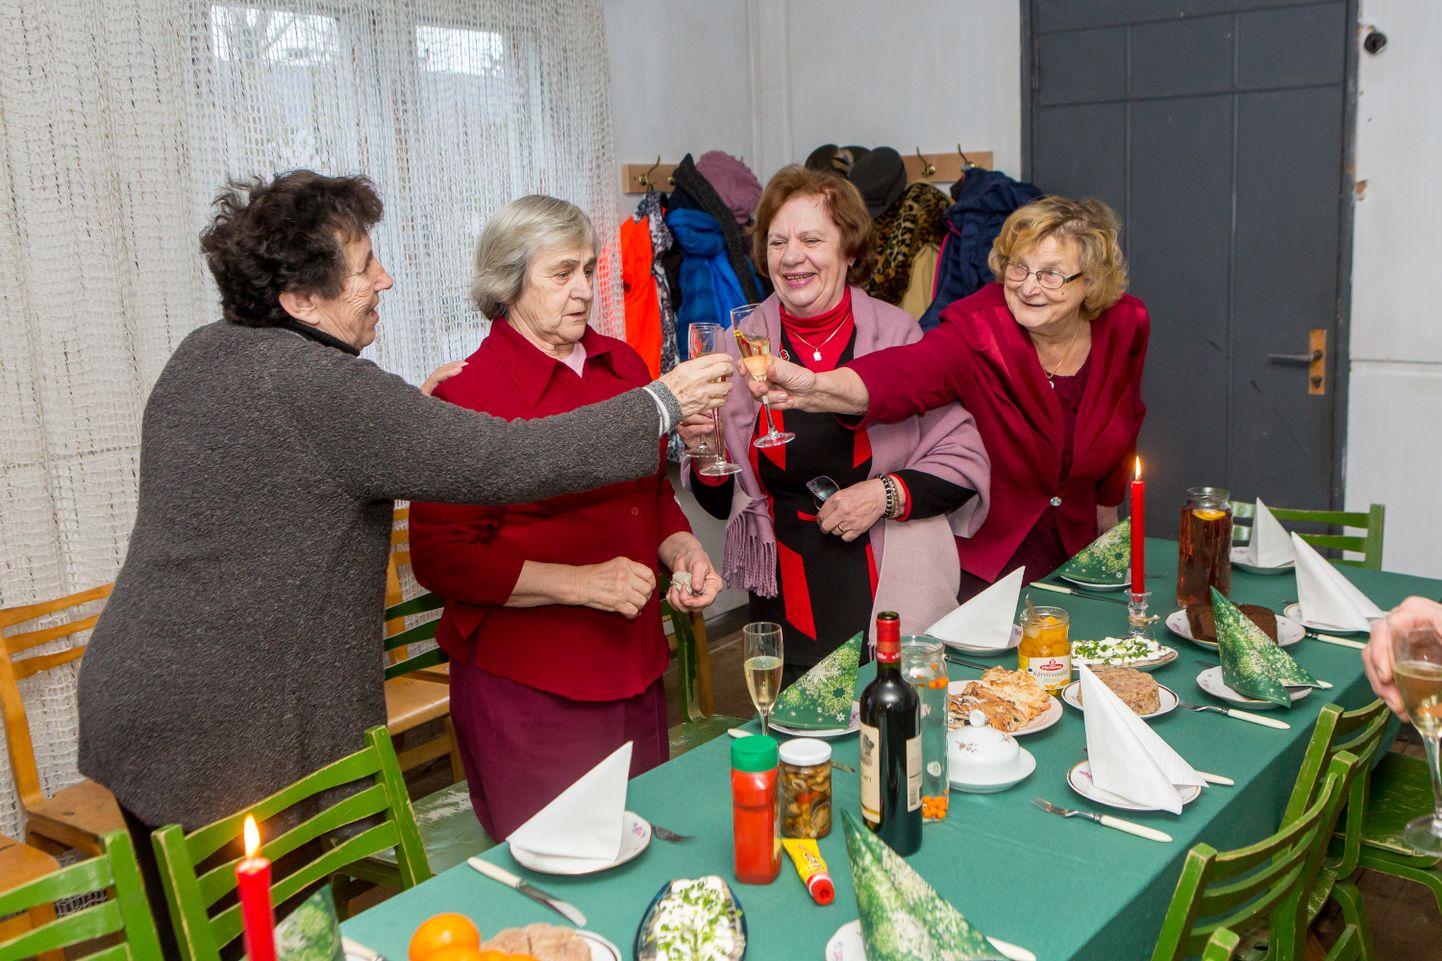 TERVISEKS! Tervisenapsu võtavad (vasakult) Evi Aksiim, Irma Malk, Sirje Raik ja Leili Laanekivi.